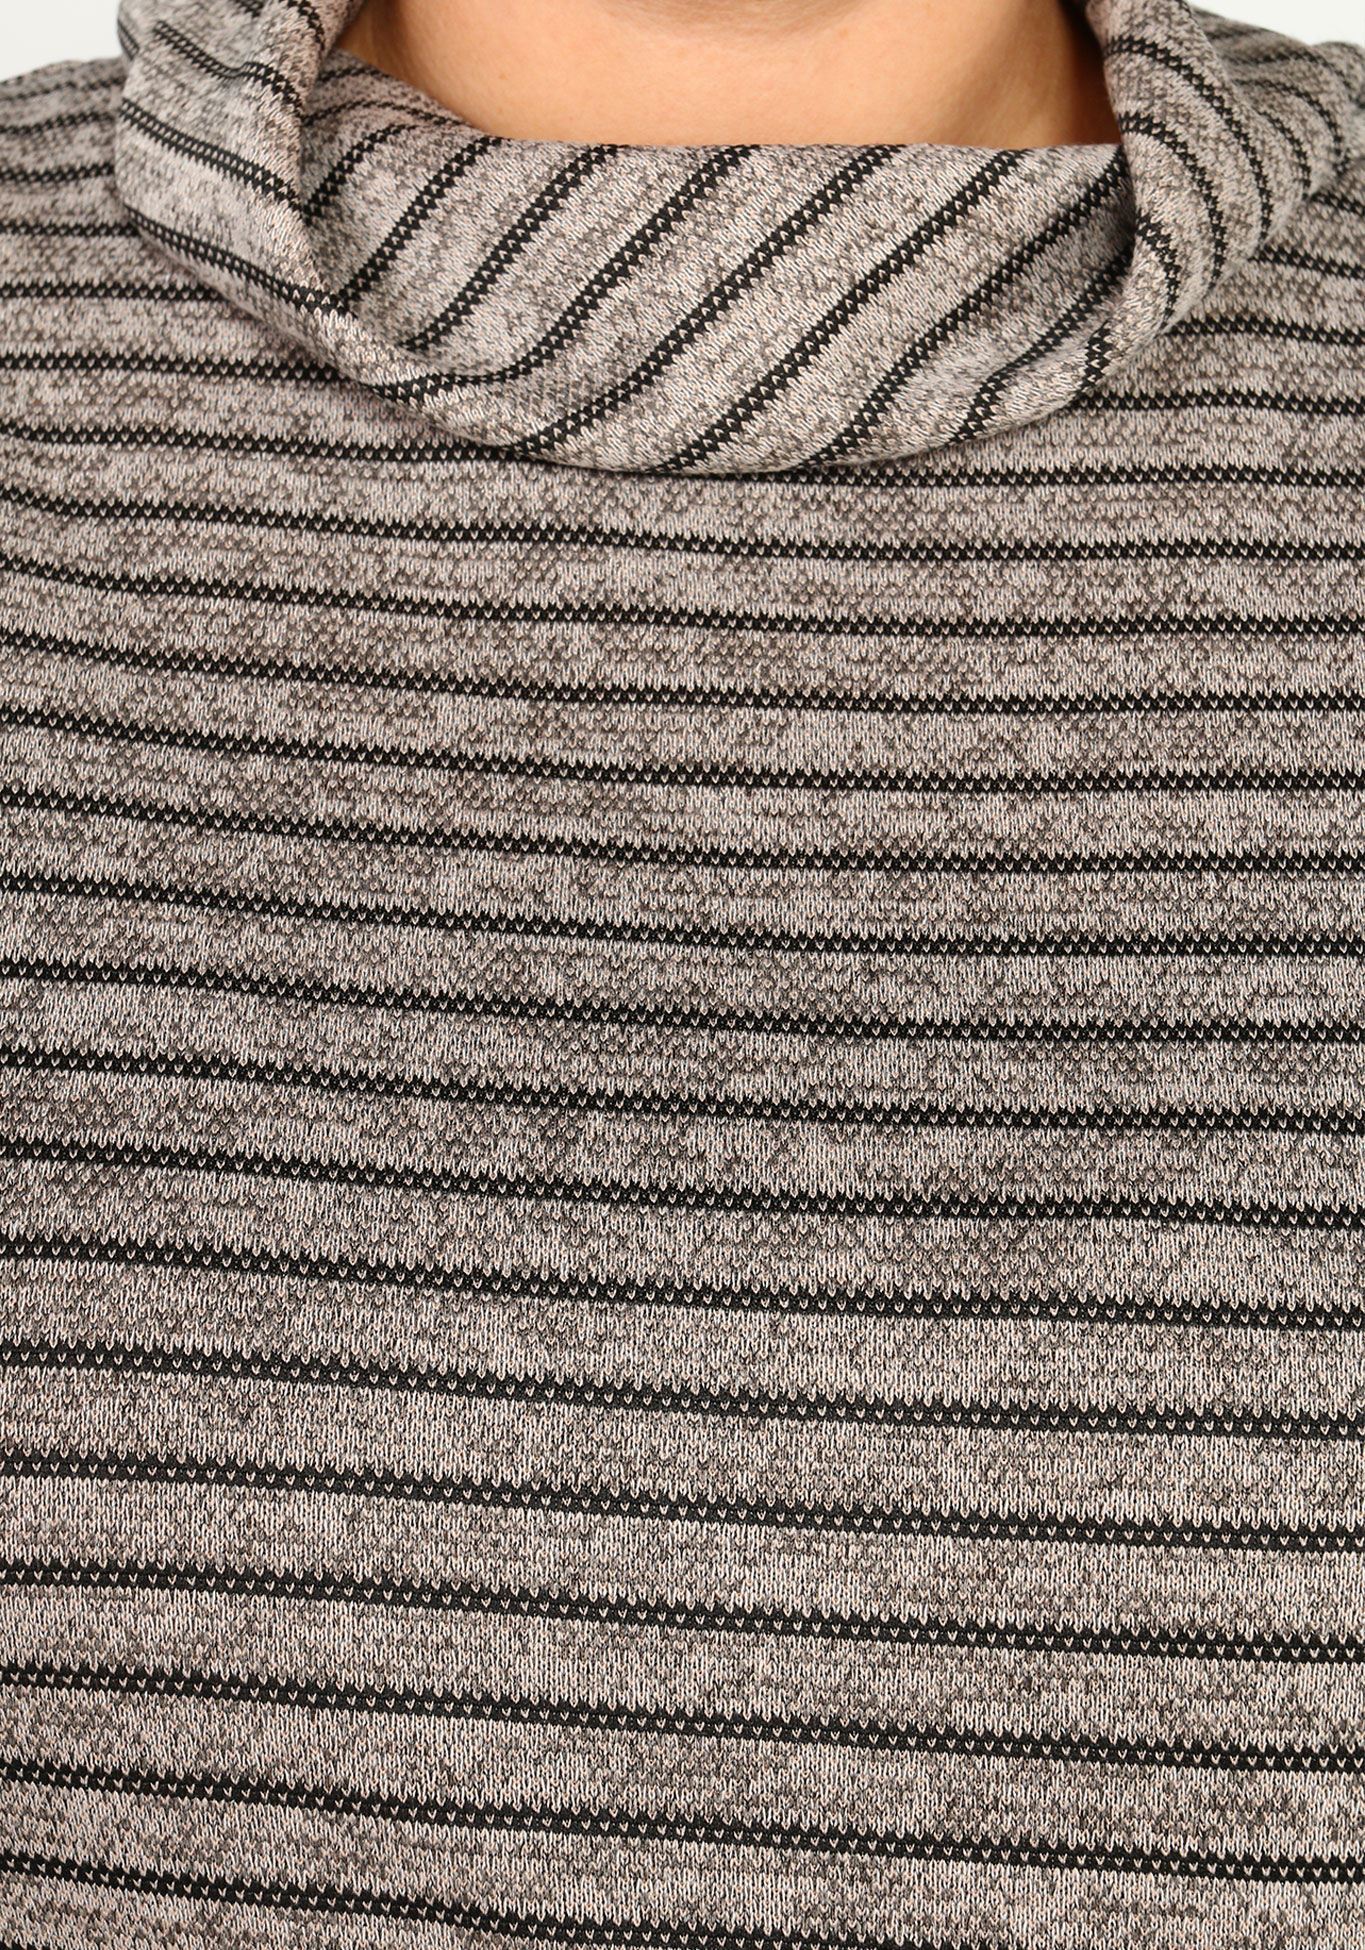 Комплект: юбка и джемпер с воротником Синель, размер 46, цвет серый - фото 7